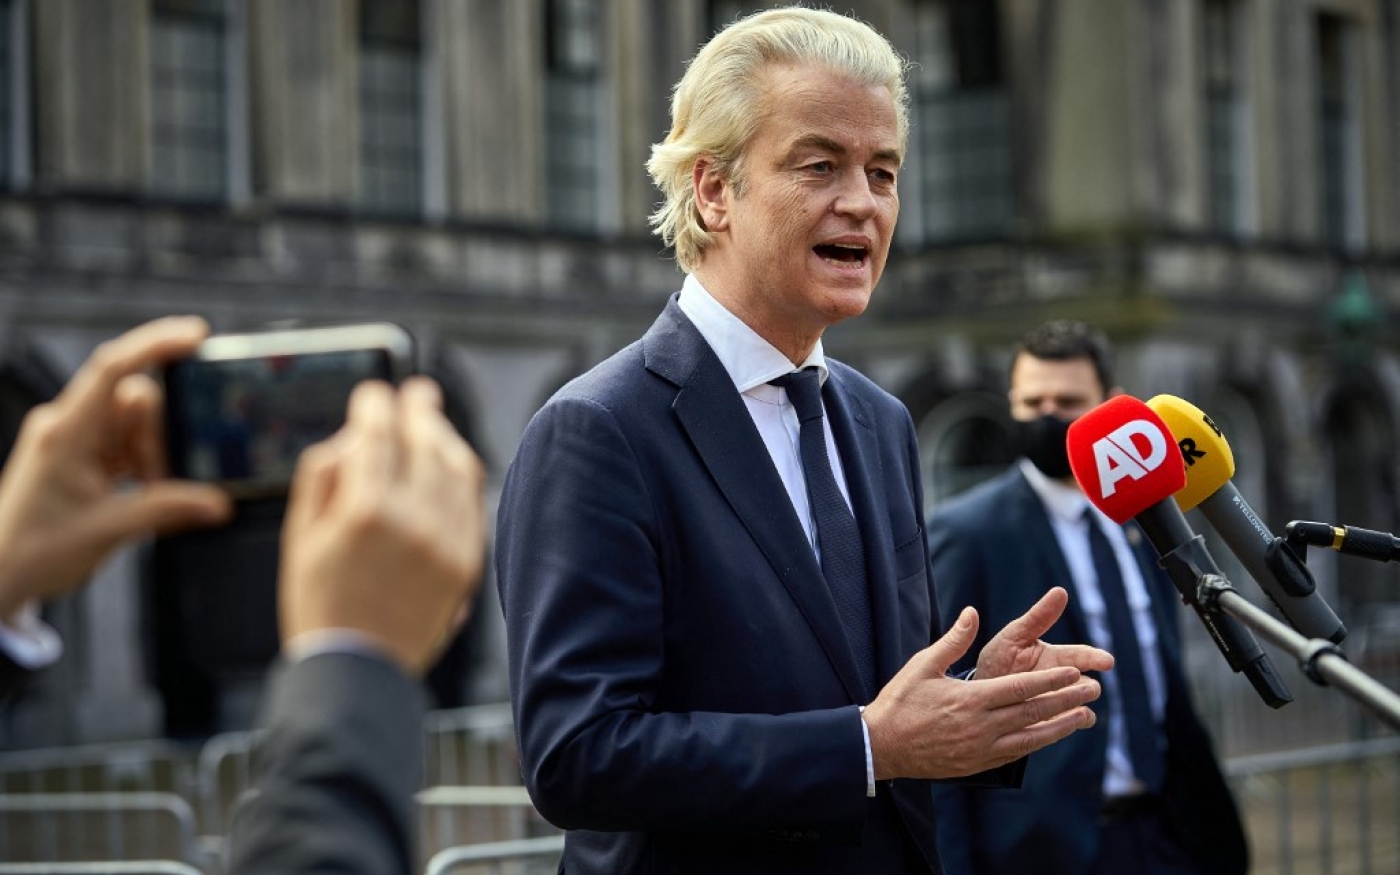 Le leader du PVV Geert Wilders s’adresse aux médias à La Haye, le 22 mars 2021 (AFP)